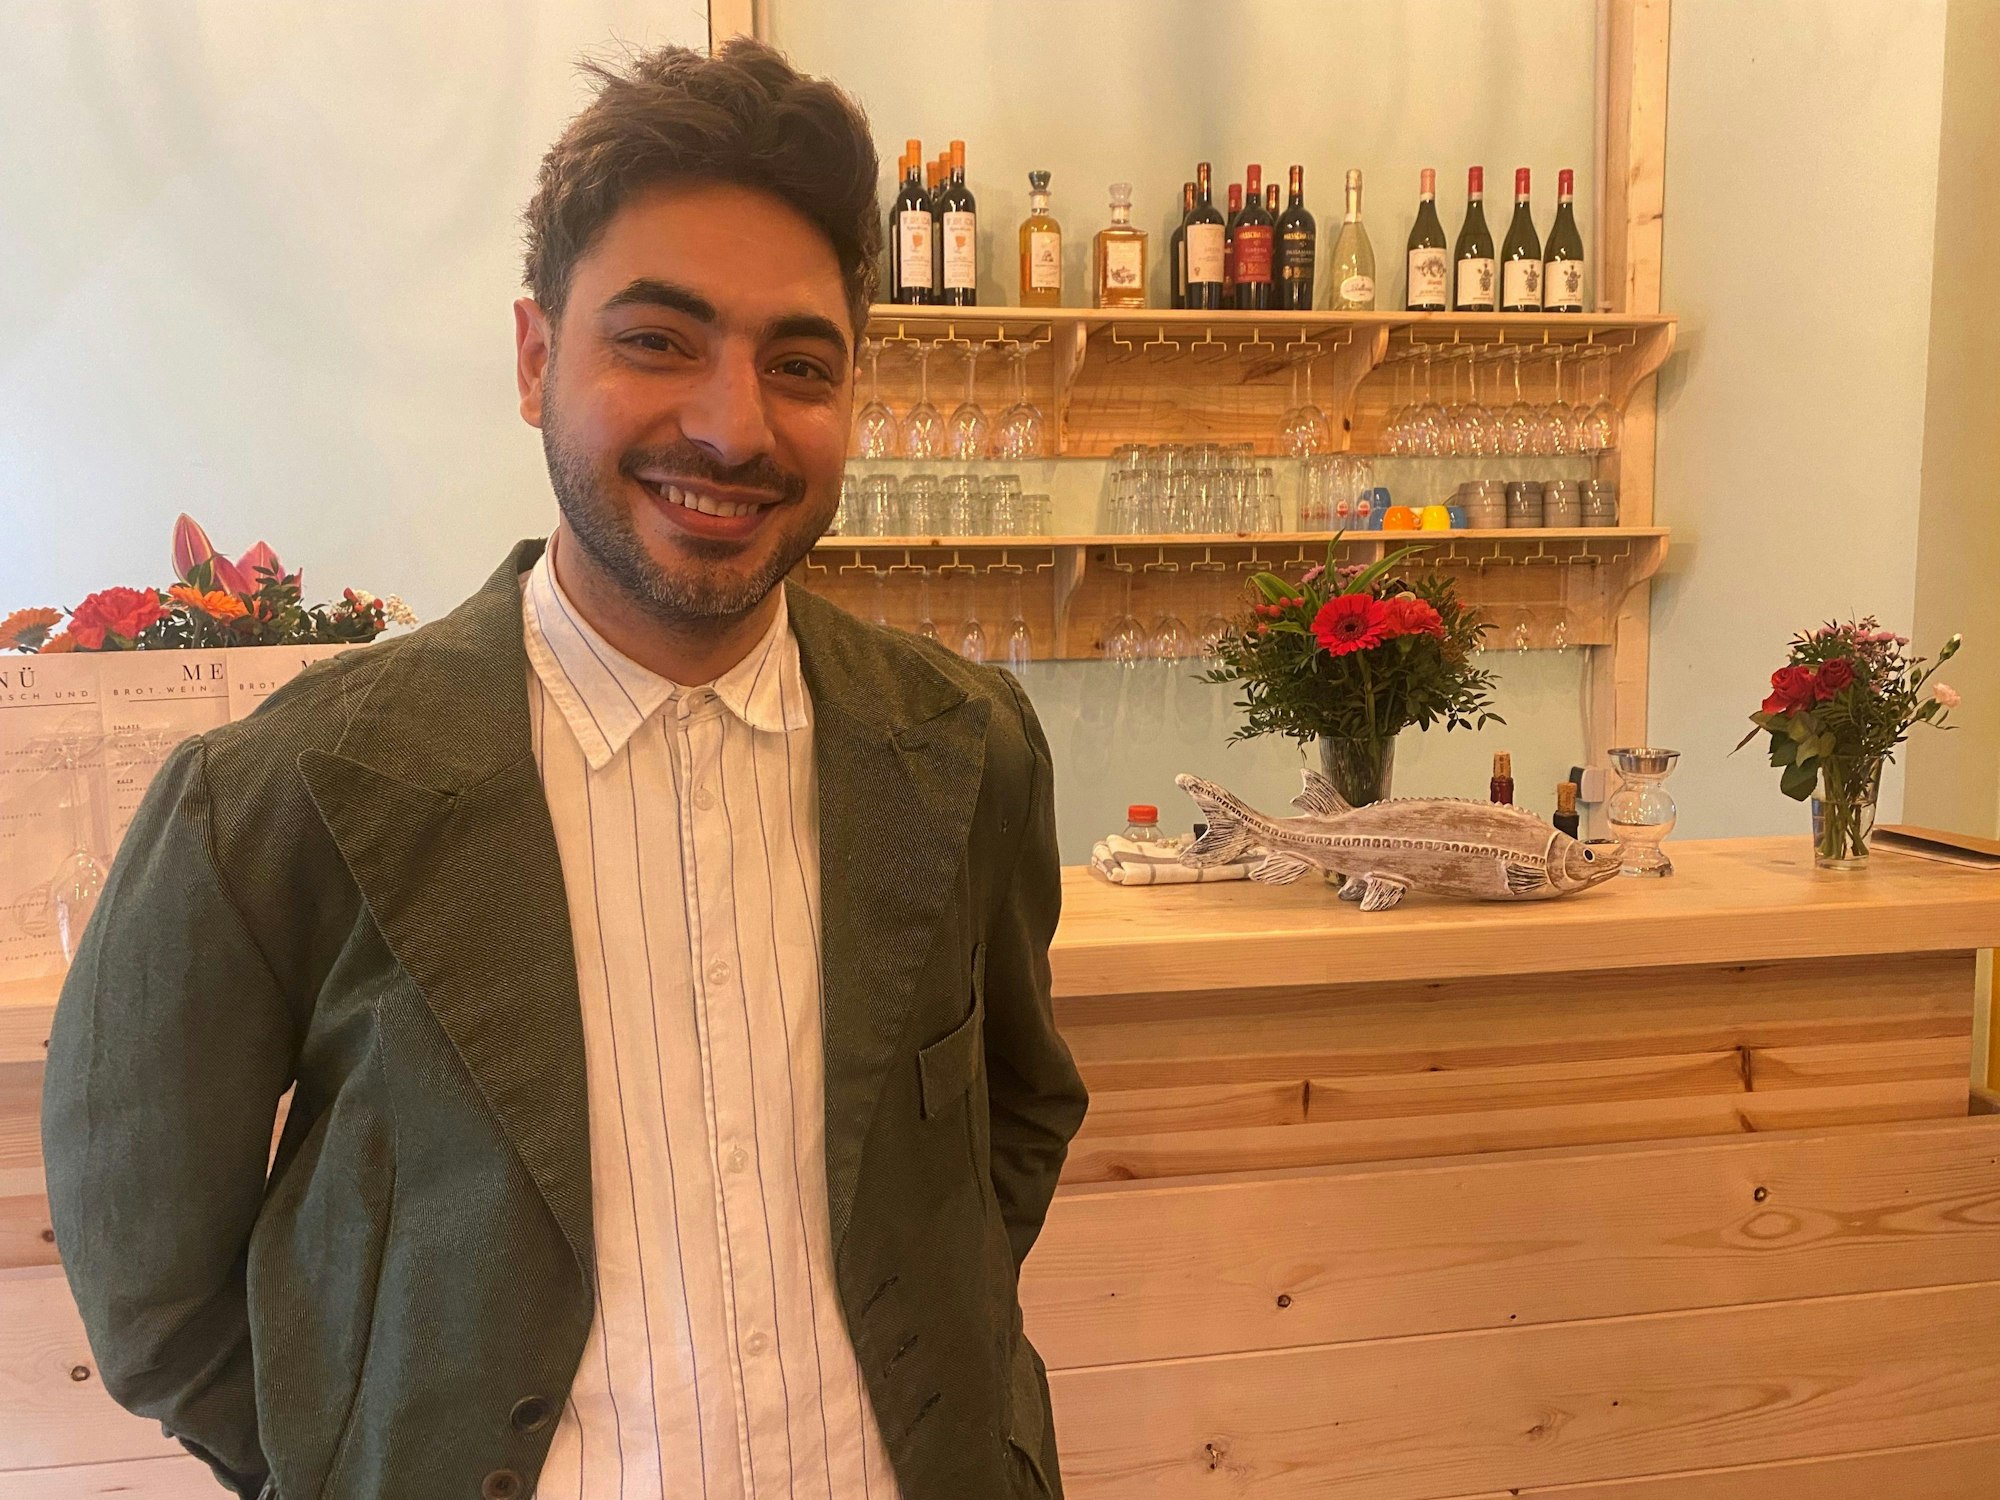 Restaurantbetreiber Tural Hasanov begrüßt seit einigen Tagen die ersten Gäste im Lokal „brot, wein, fisch und...“.